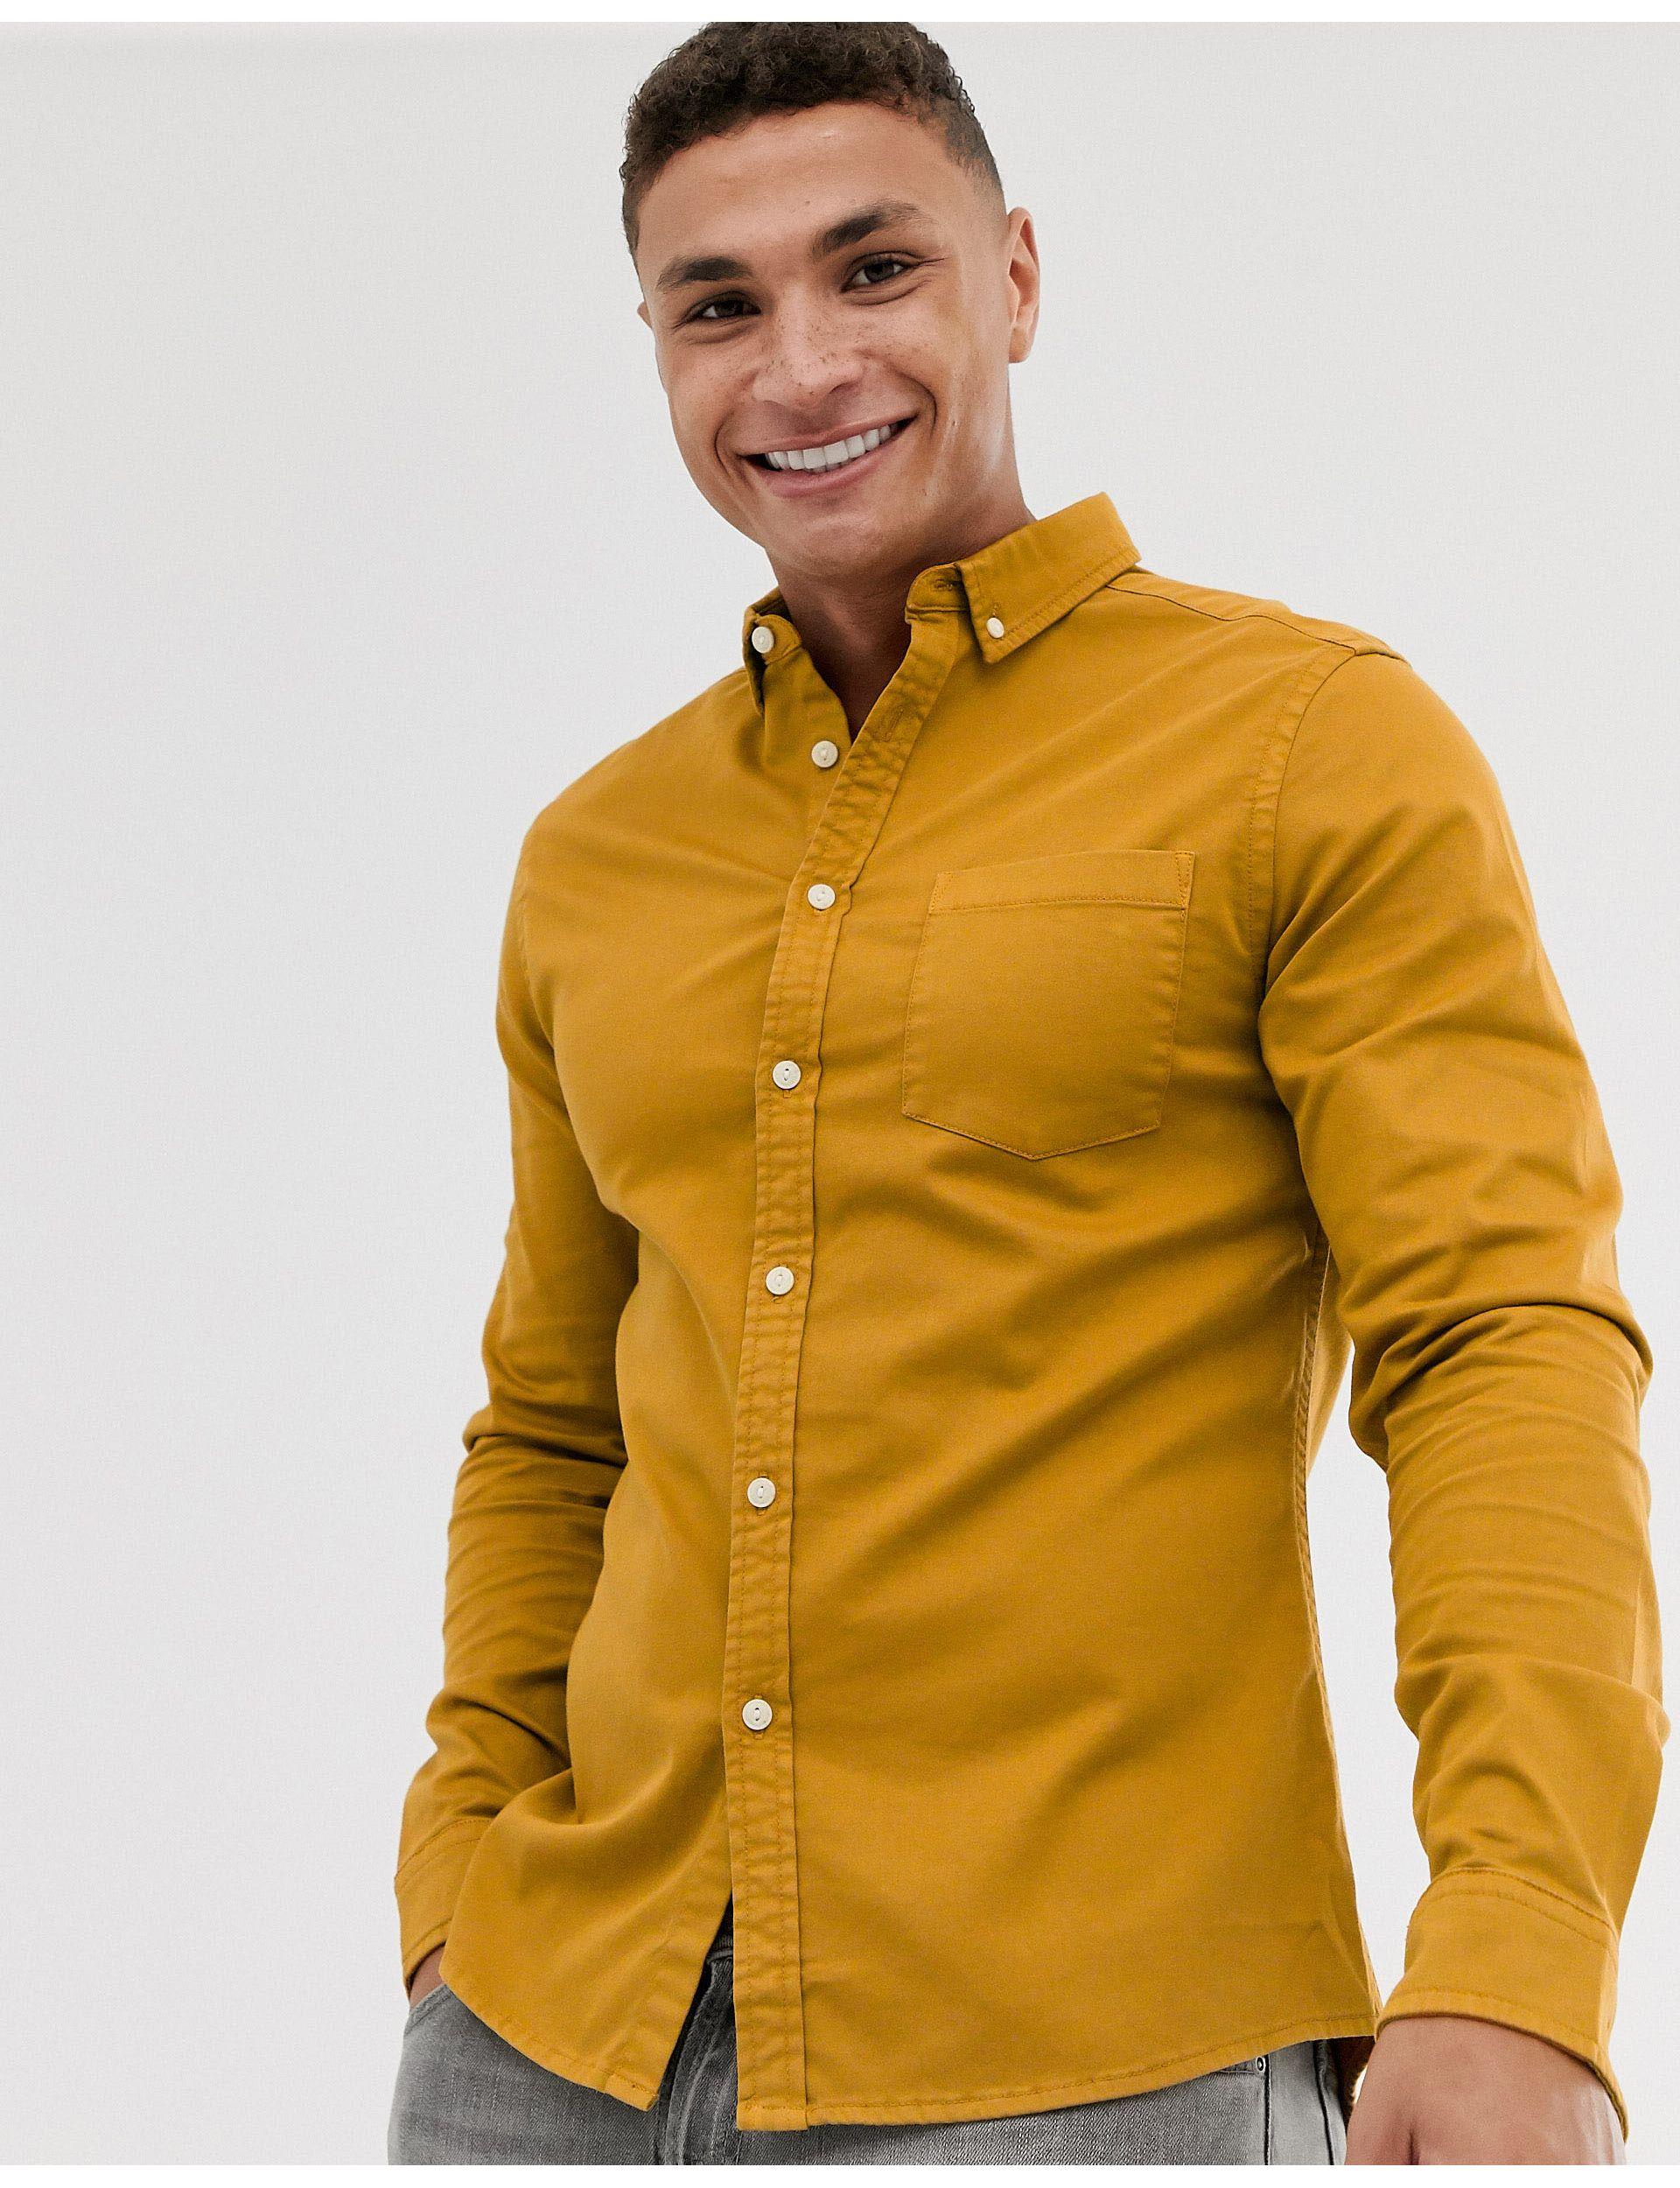 Горчичная рубашка. Горчичная рубашка Benetton вельветовая. Рубашка Colins мужская желтая. Горчичная рубашка мужская. Рубашка горчичного цвета мужская.